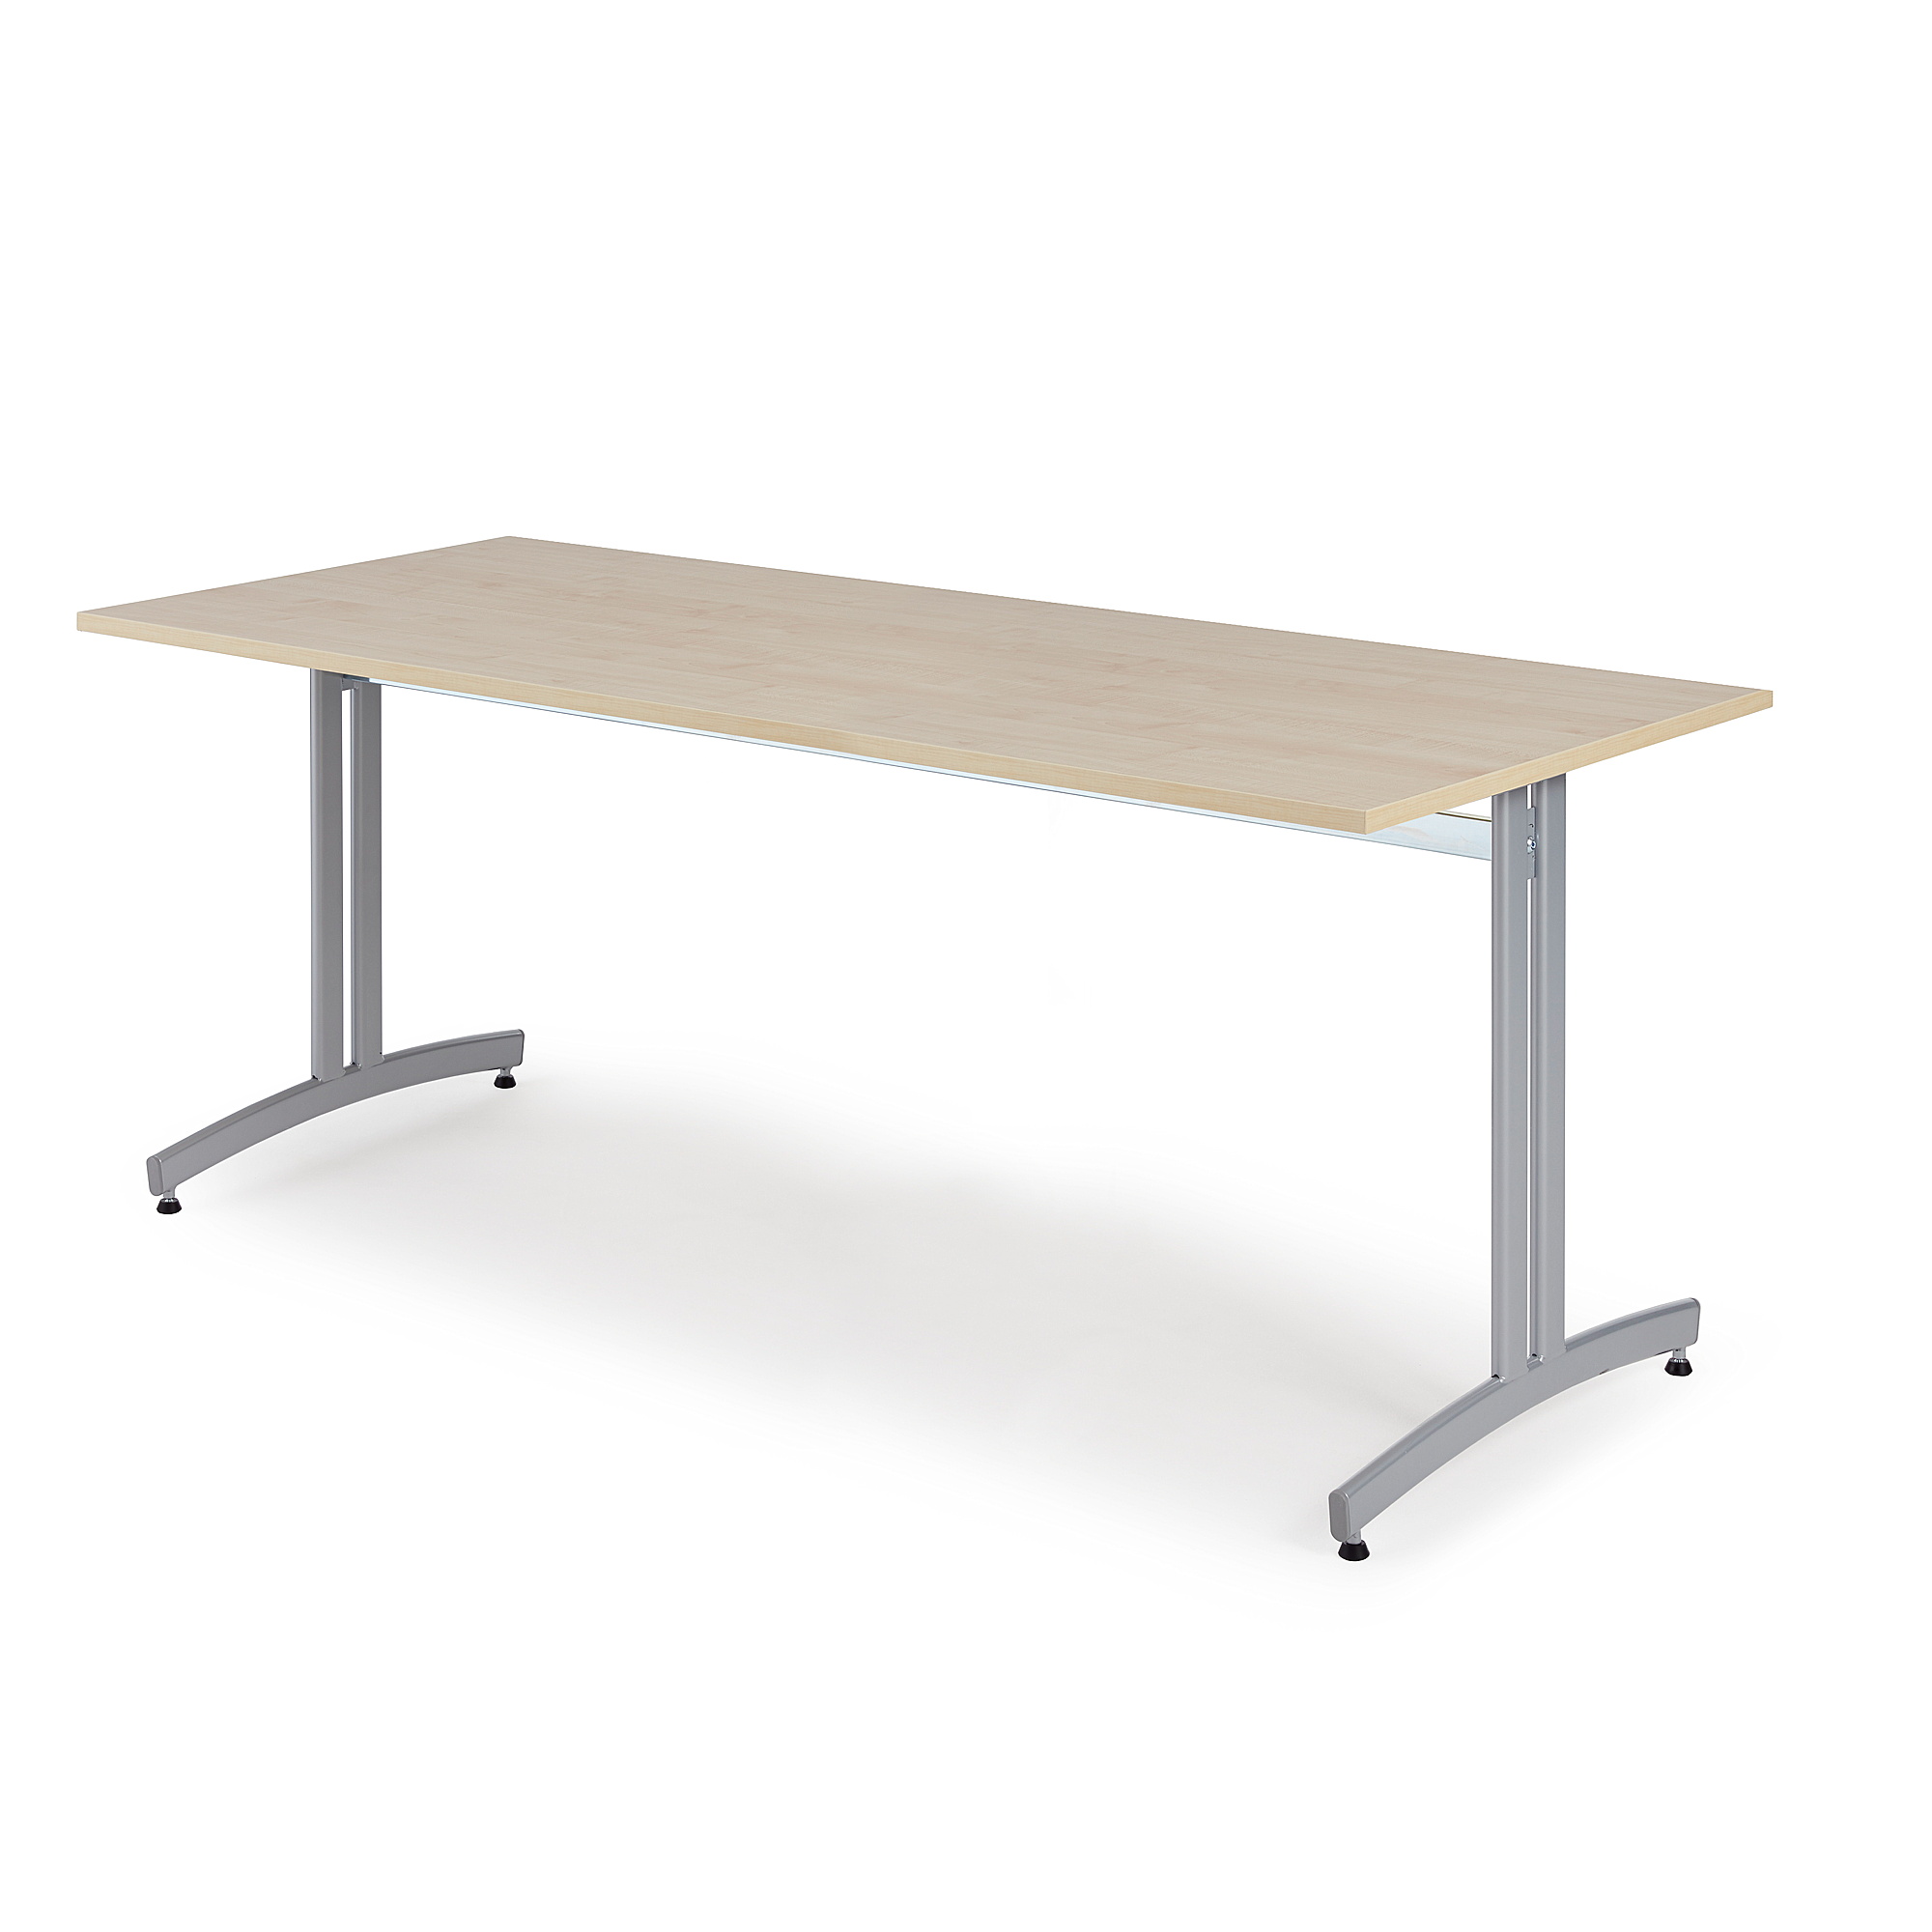 Stůl SANNA, 1800x800x720 mm, stříbrná/bříza